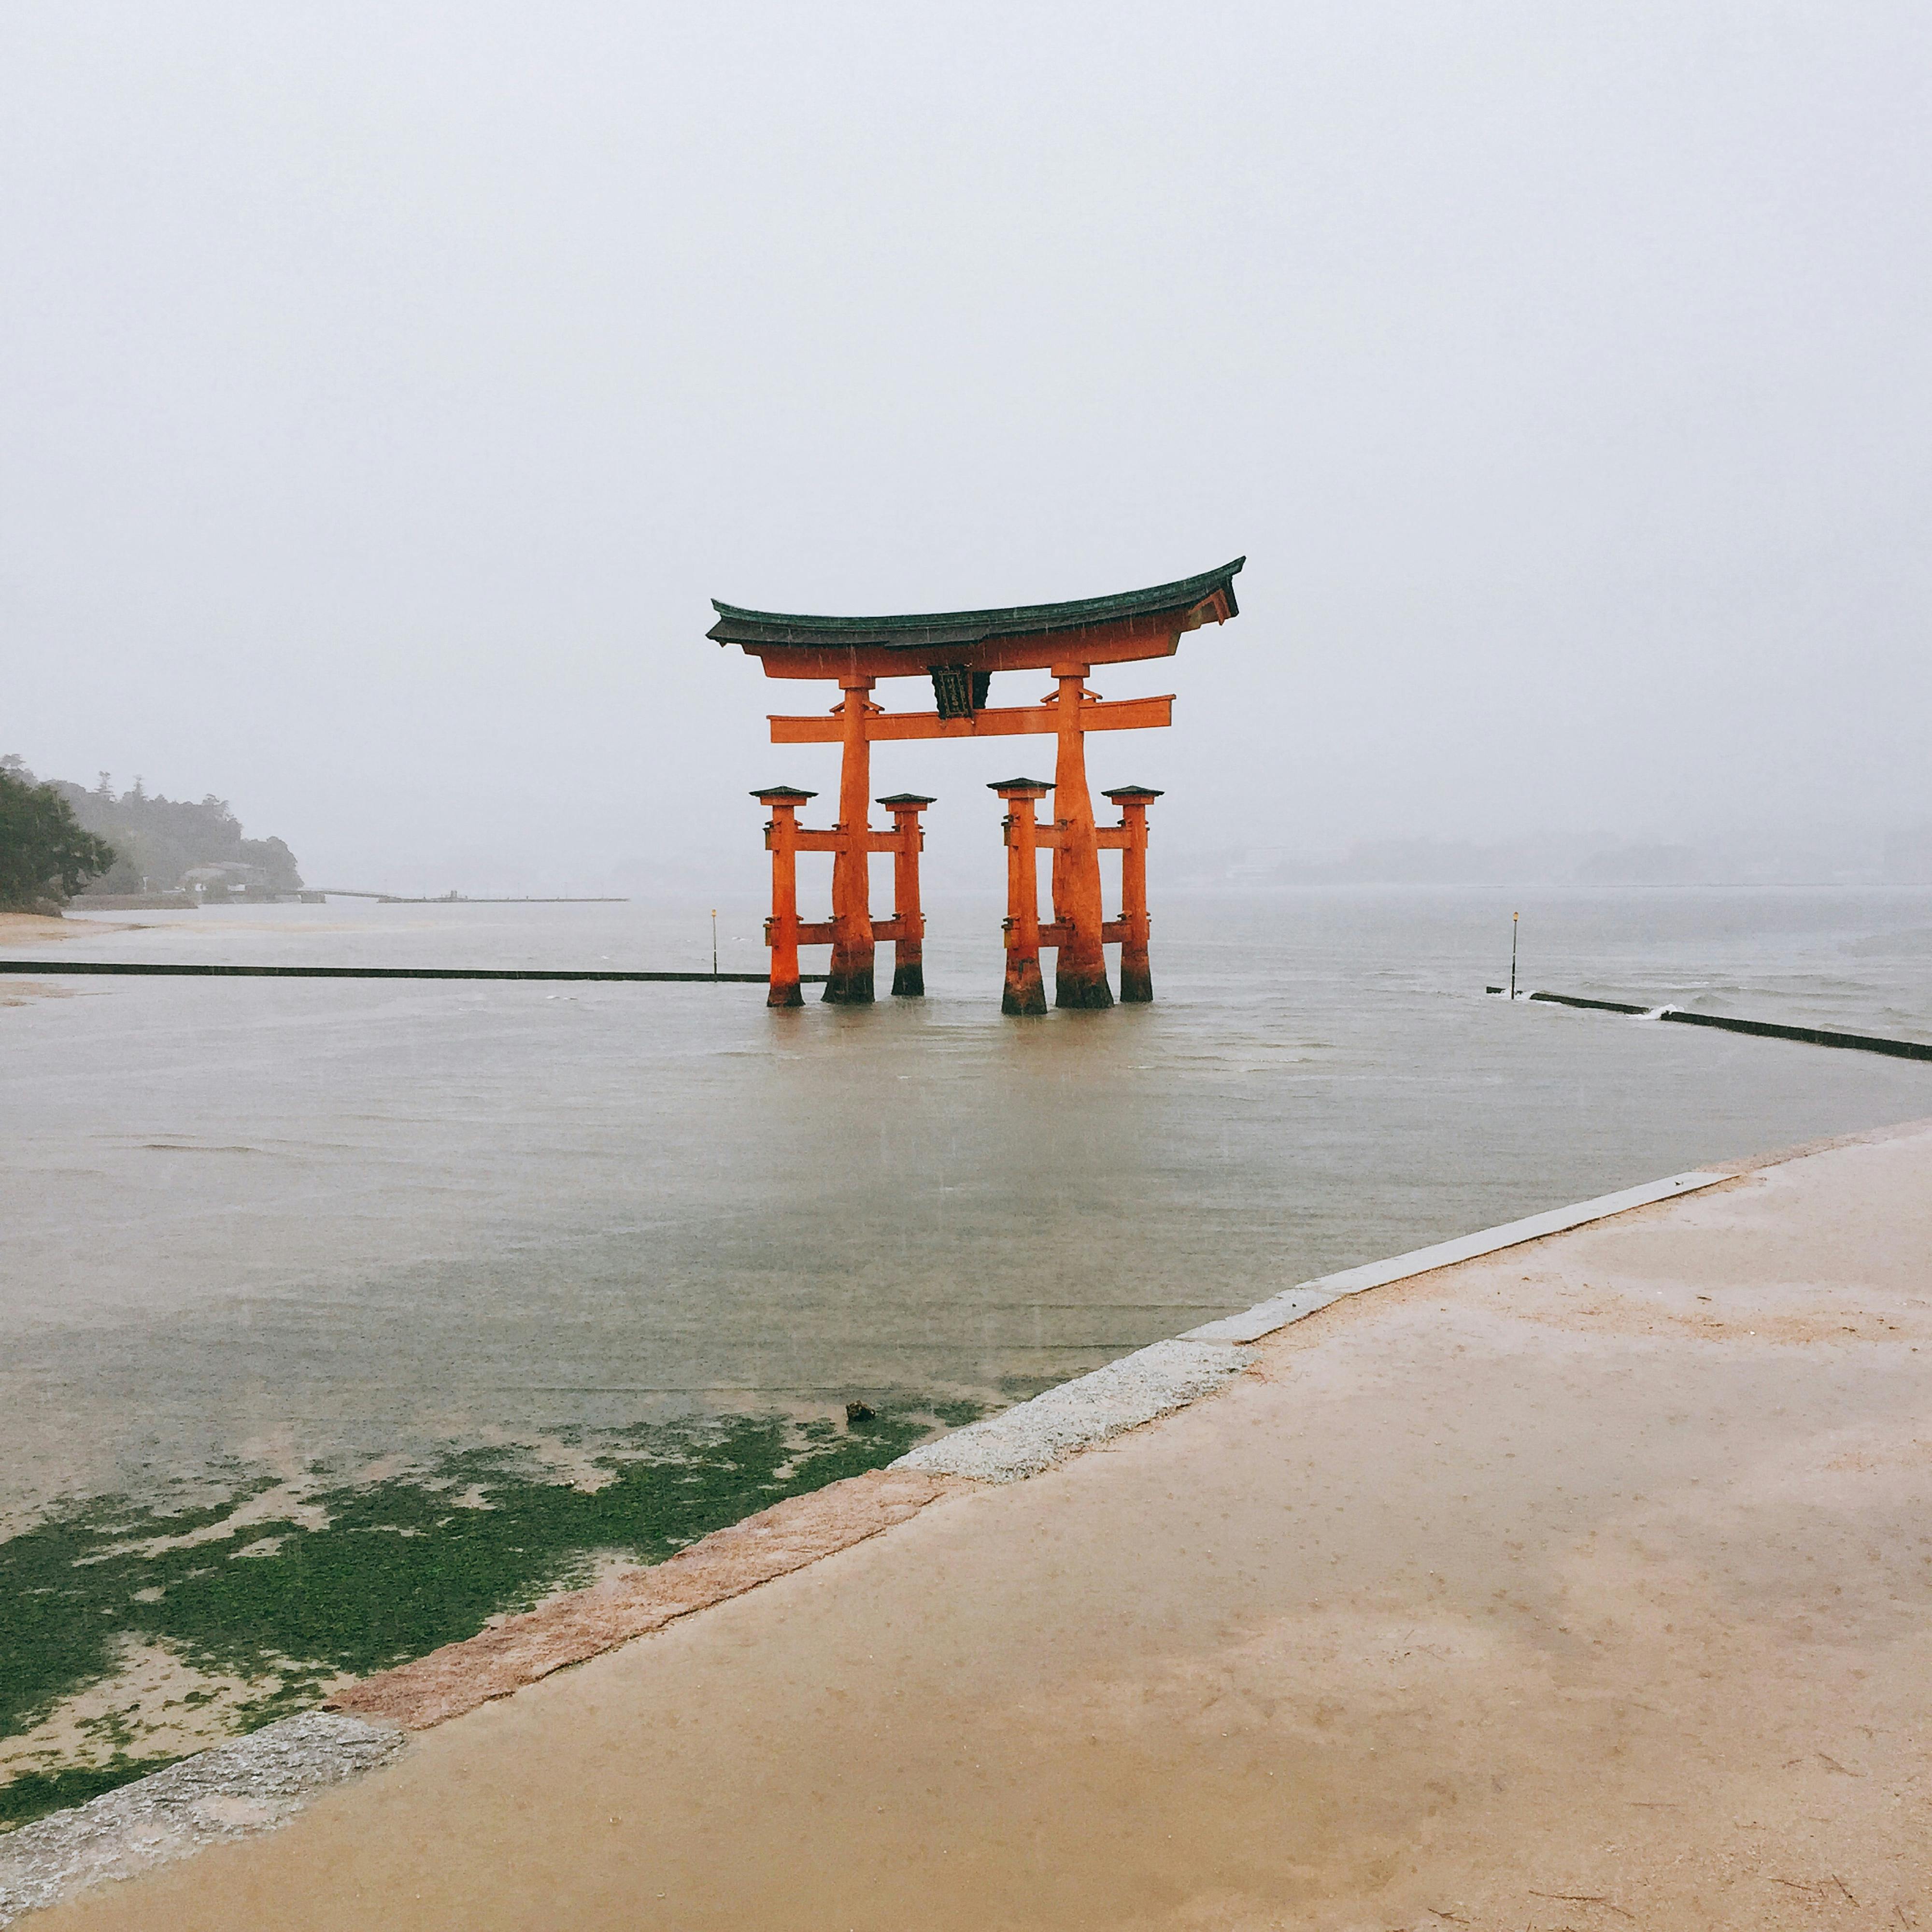 嚴島神社 いつくしまじんじゃ 厳島神社 の投稿写真 感想 みどころ 広島へやってきました 残念ながら雨ですが 厳島神社は観光客 トリップノート